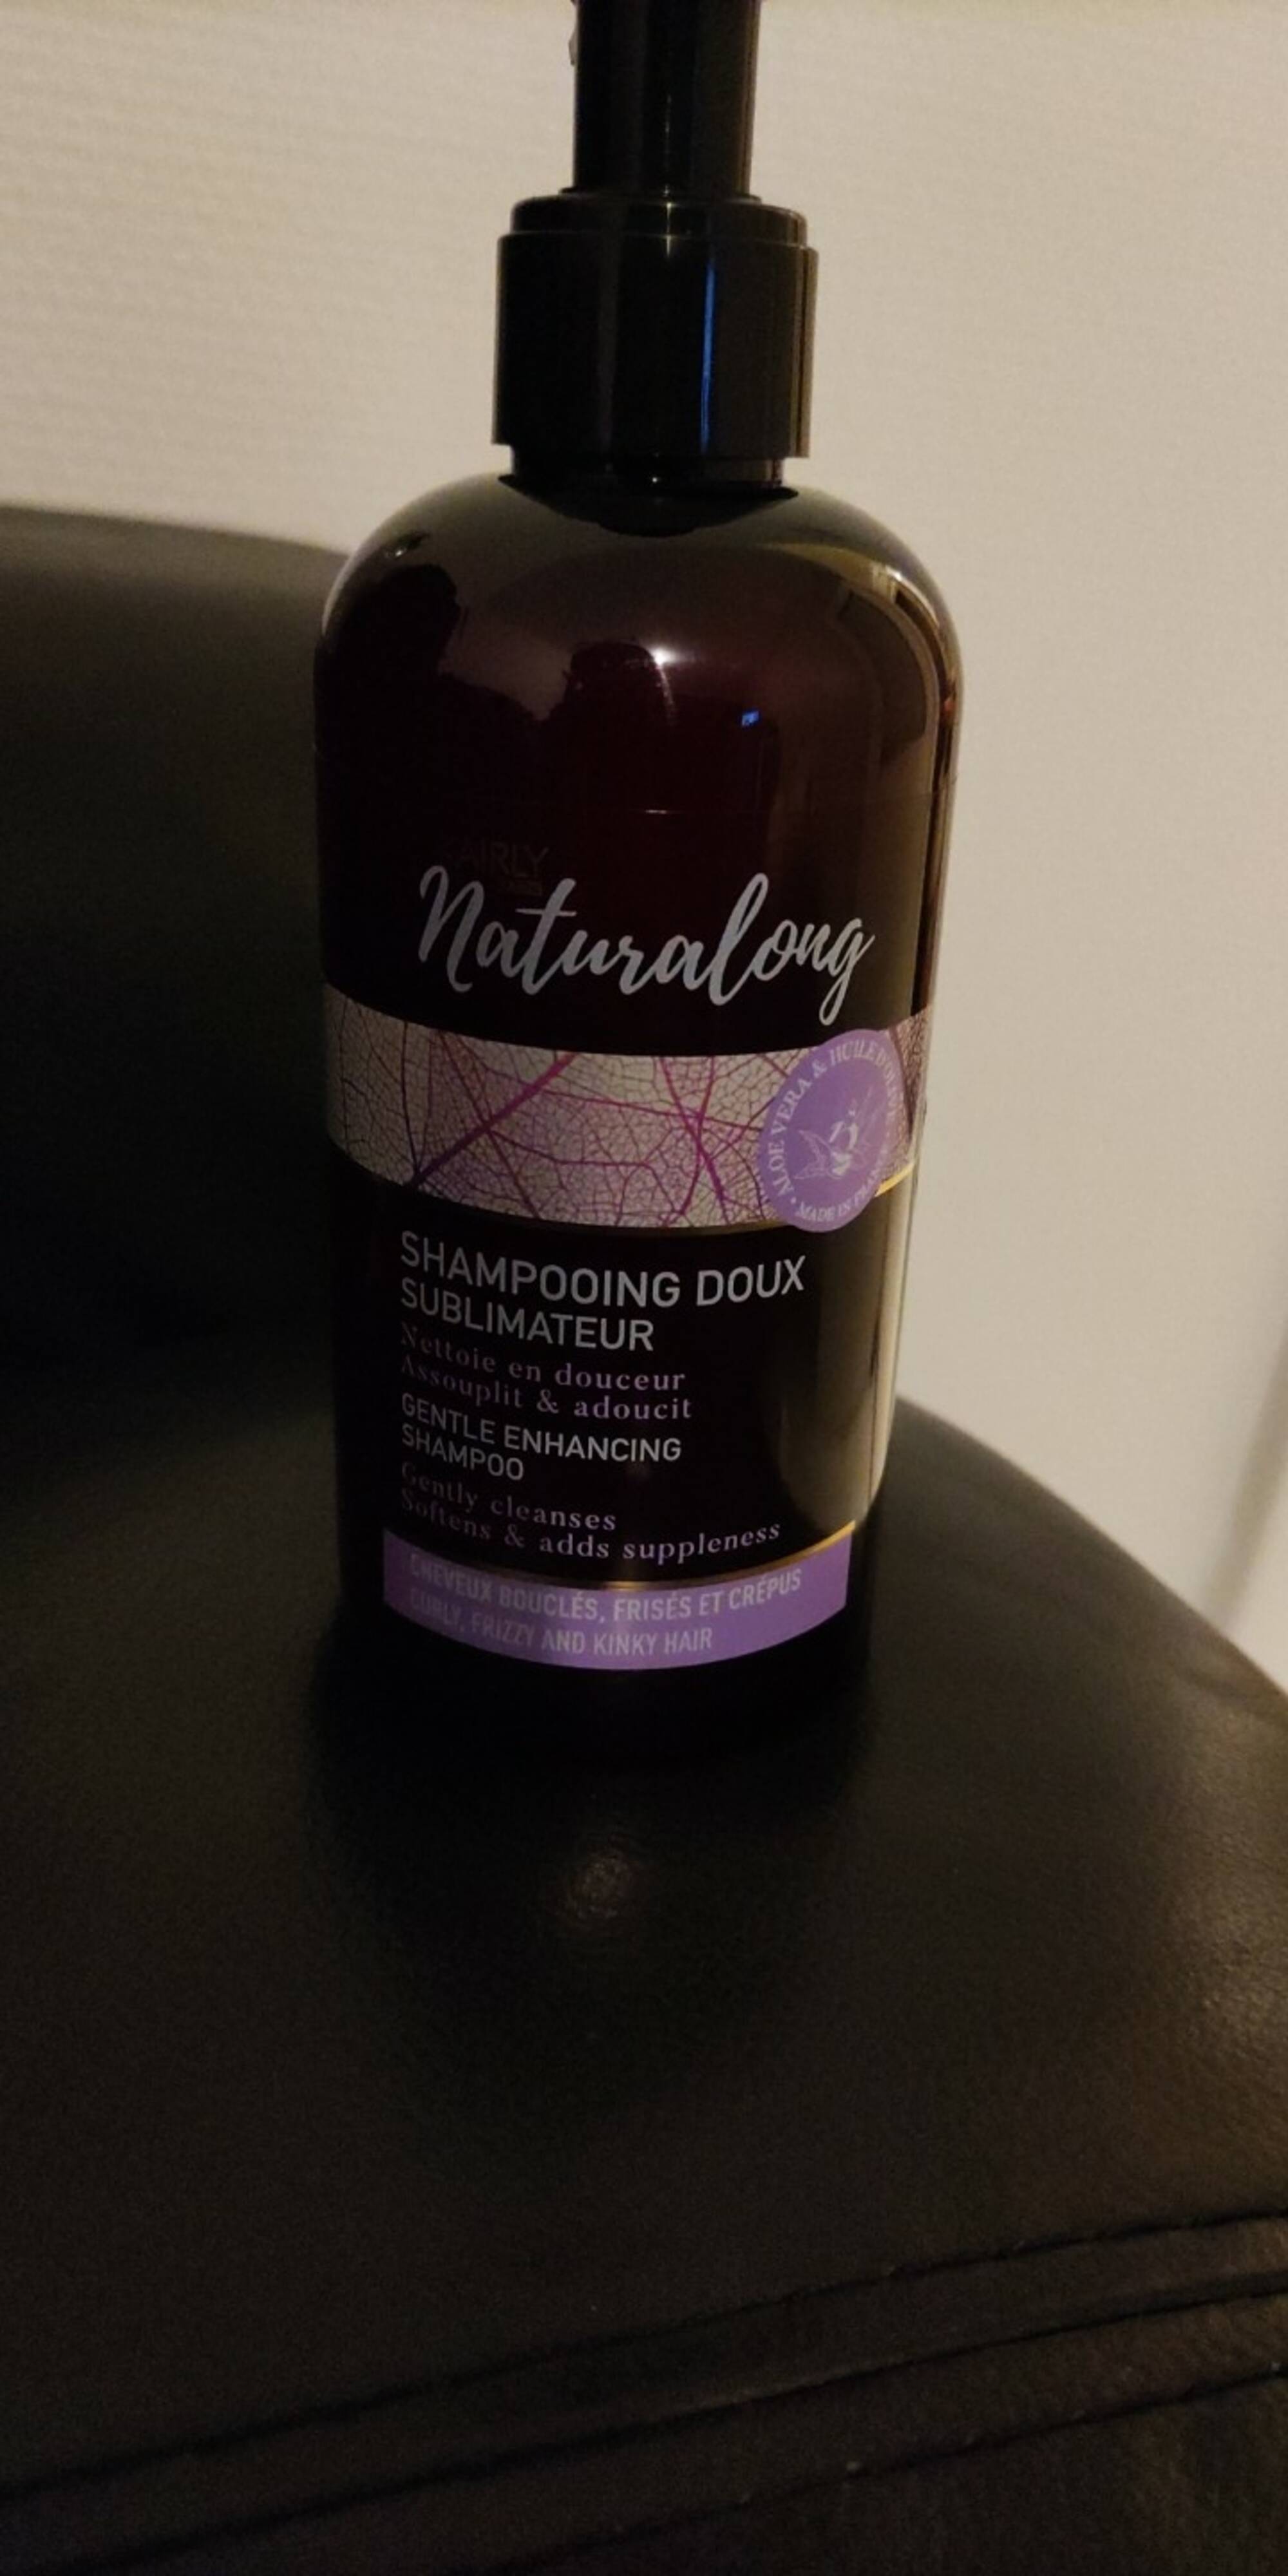 KAIRLY - Naturalong - Shampooing doux sublimateur